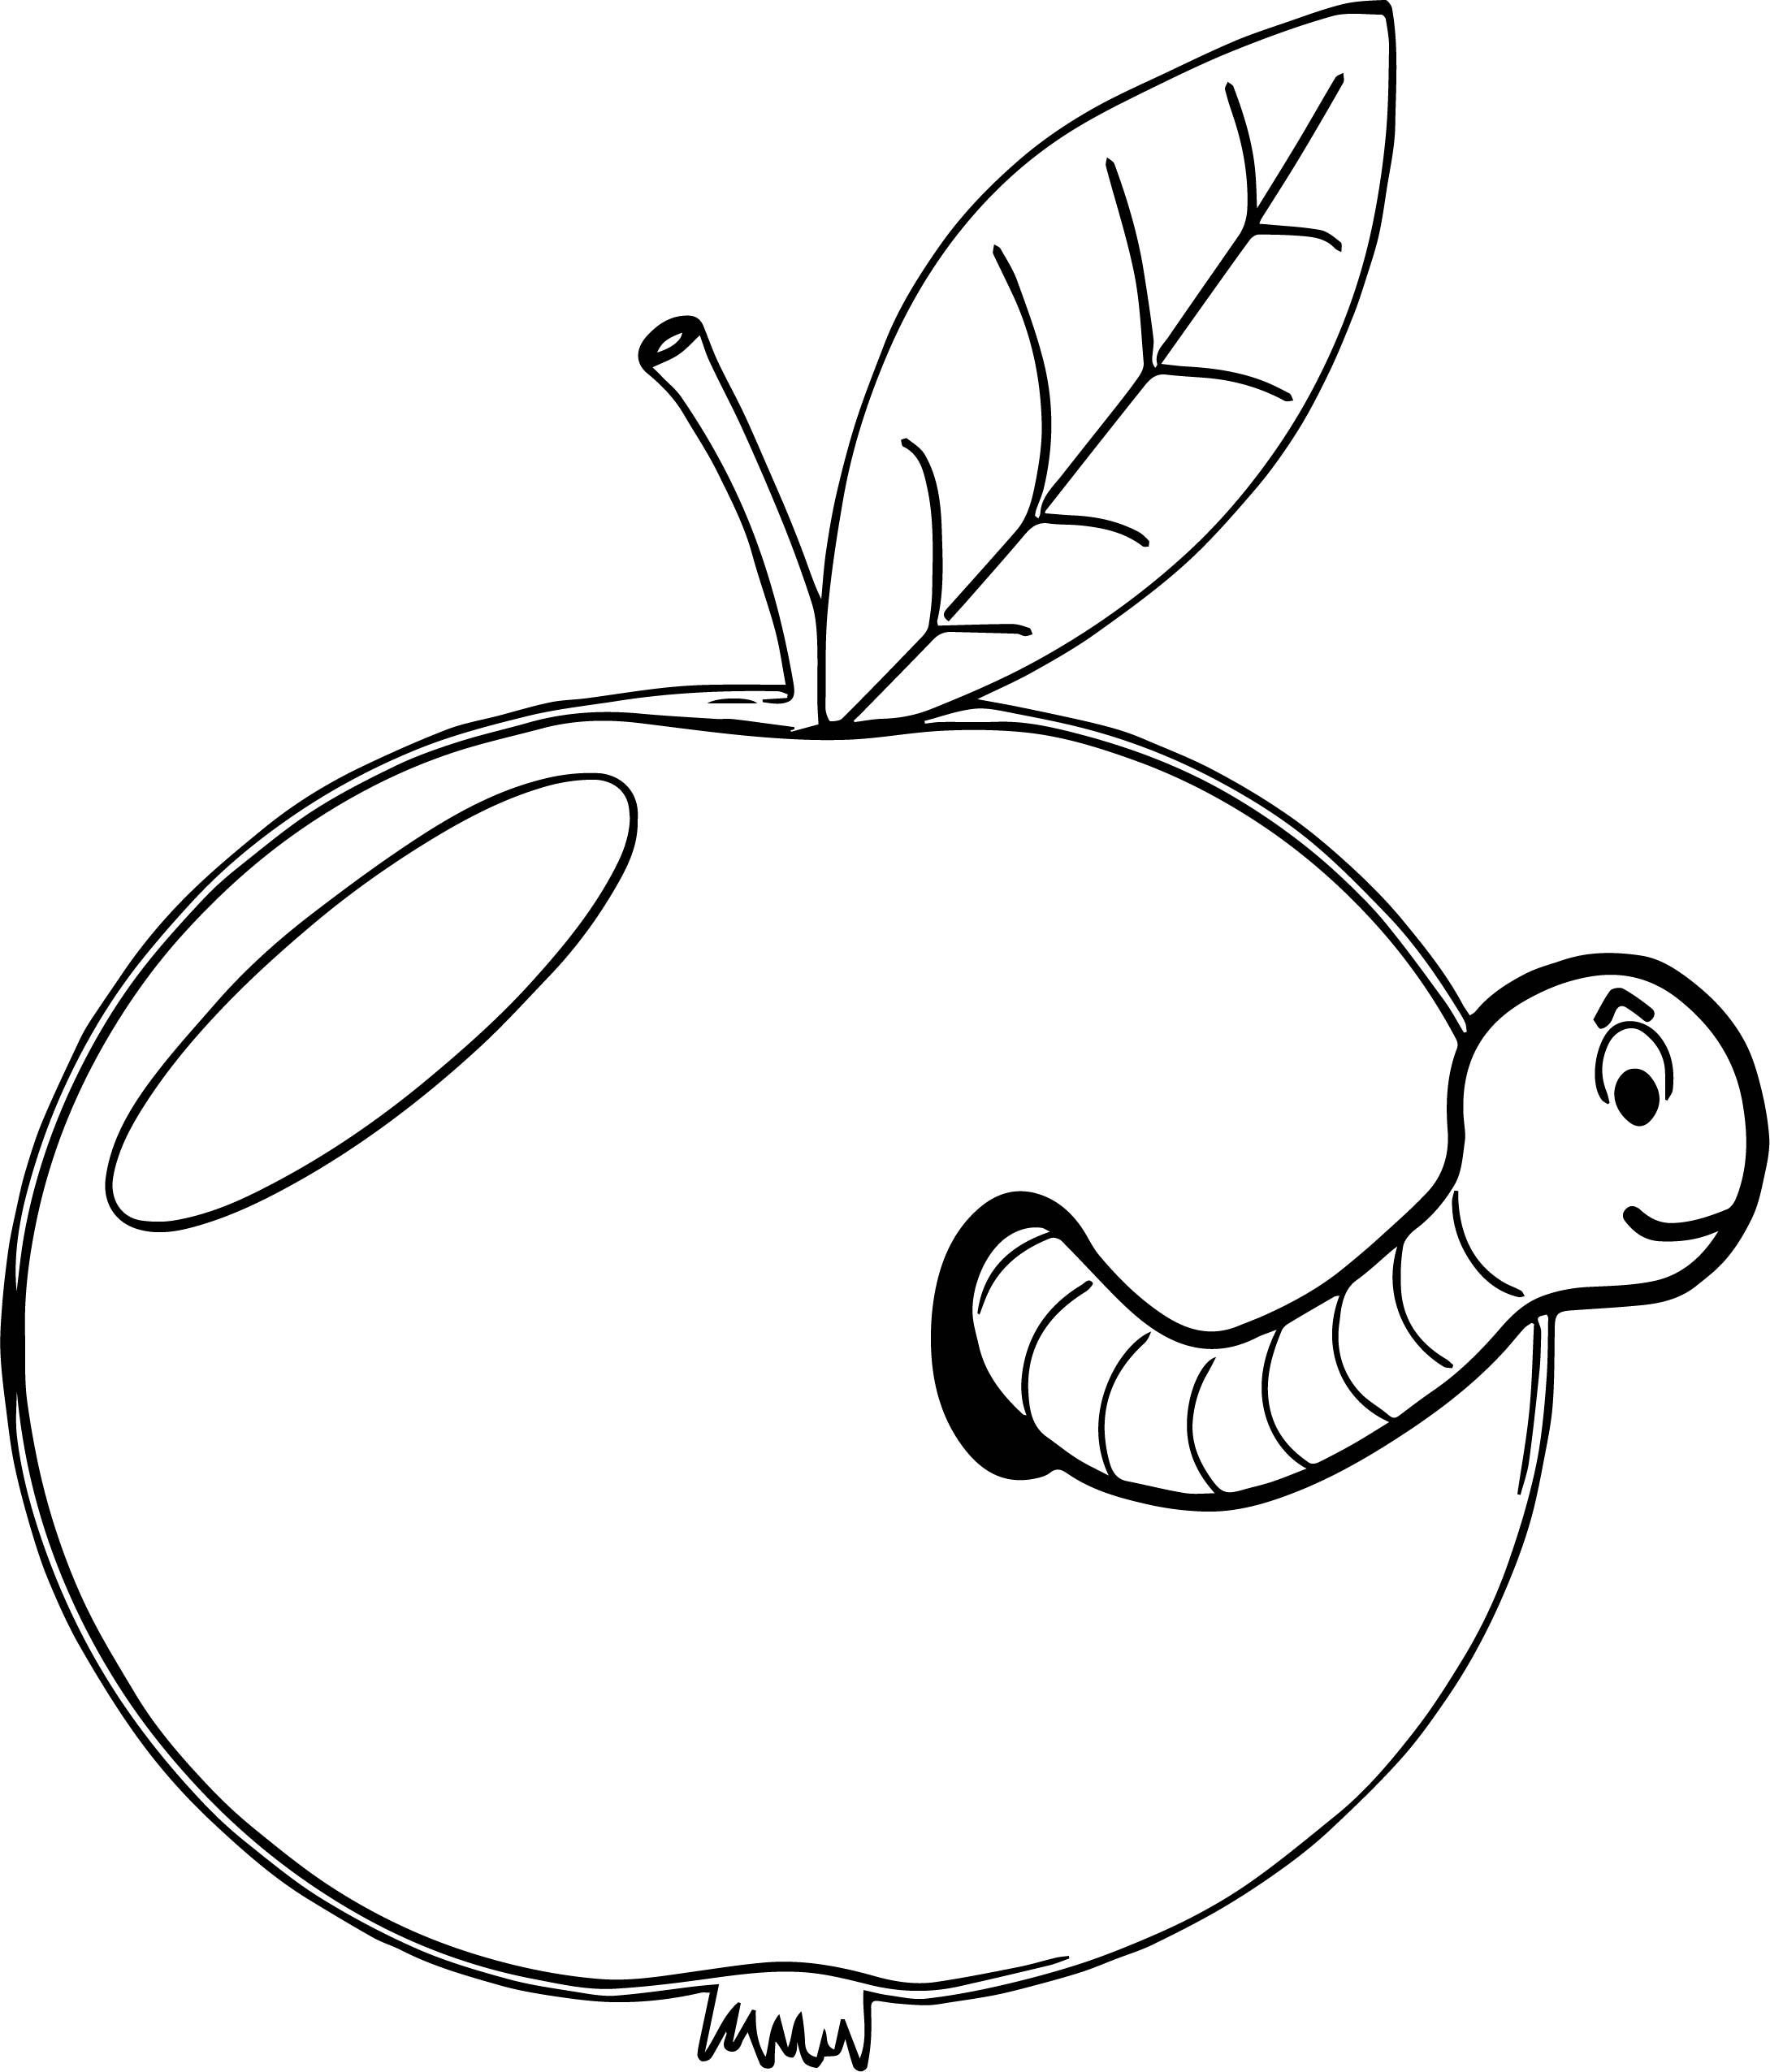 Яблоко с червячком раскраска для детей